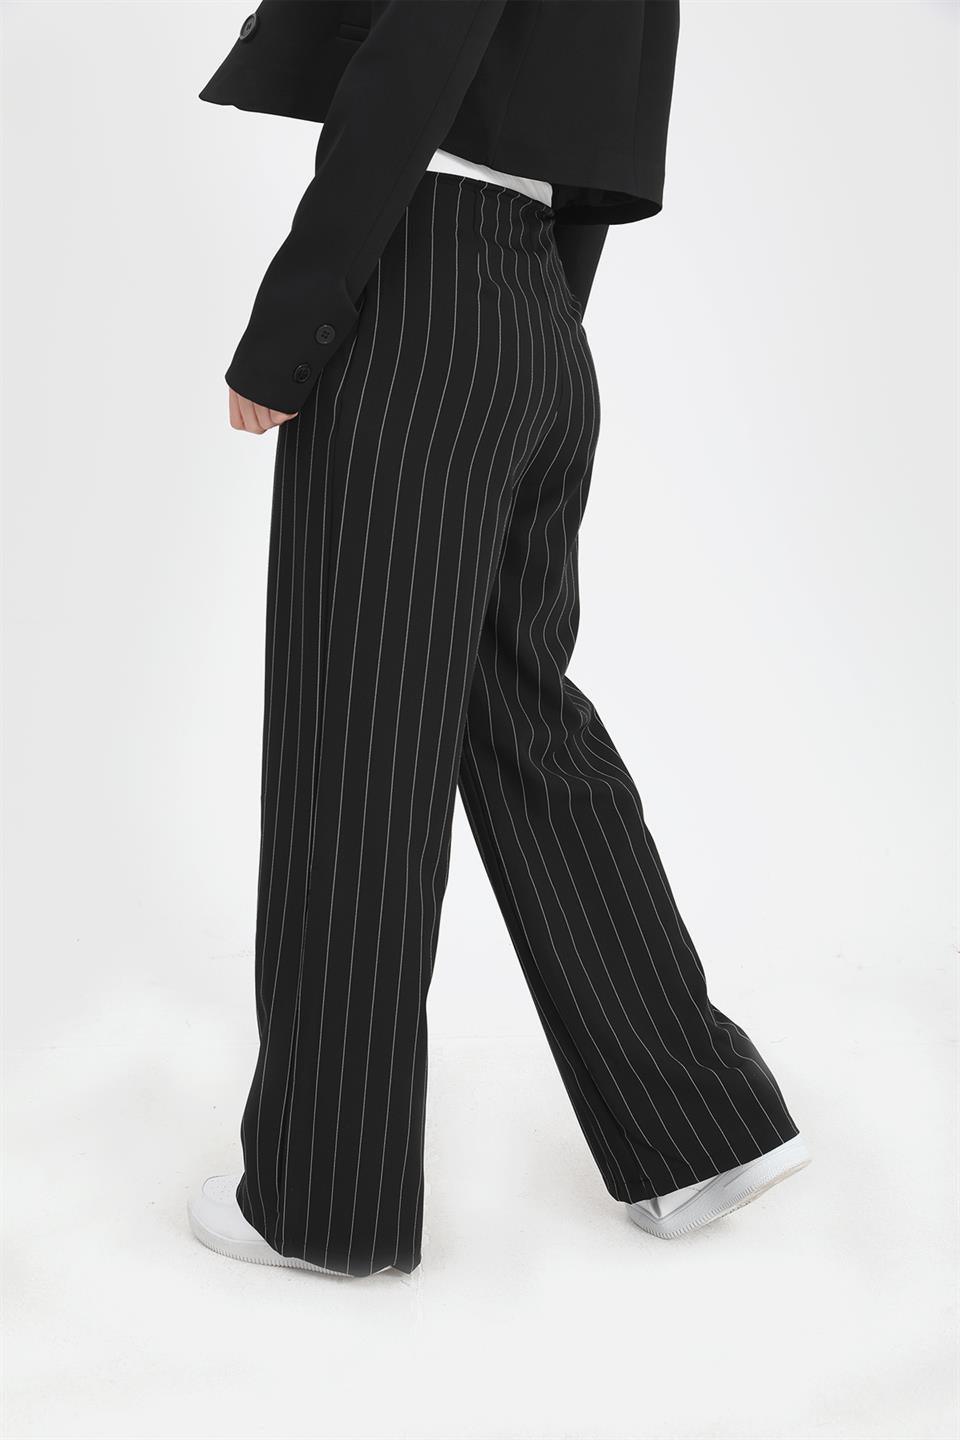 Women's Trousers Garni Belted Wide Striped - Black - STREETMODE™ DE